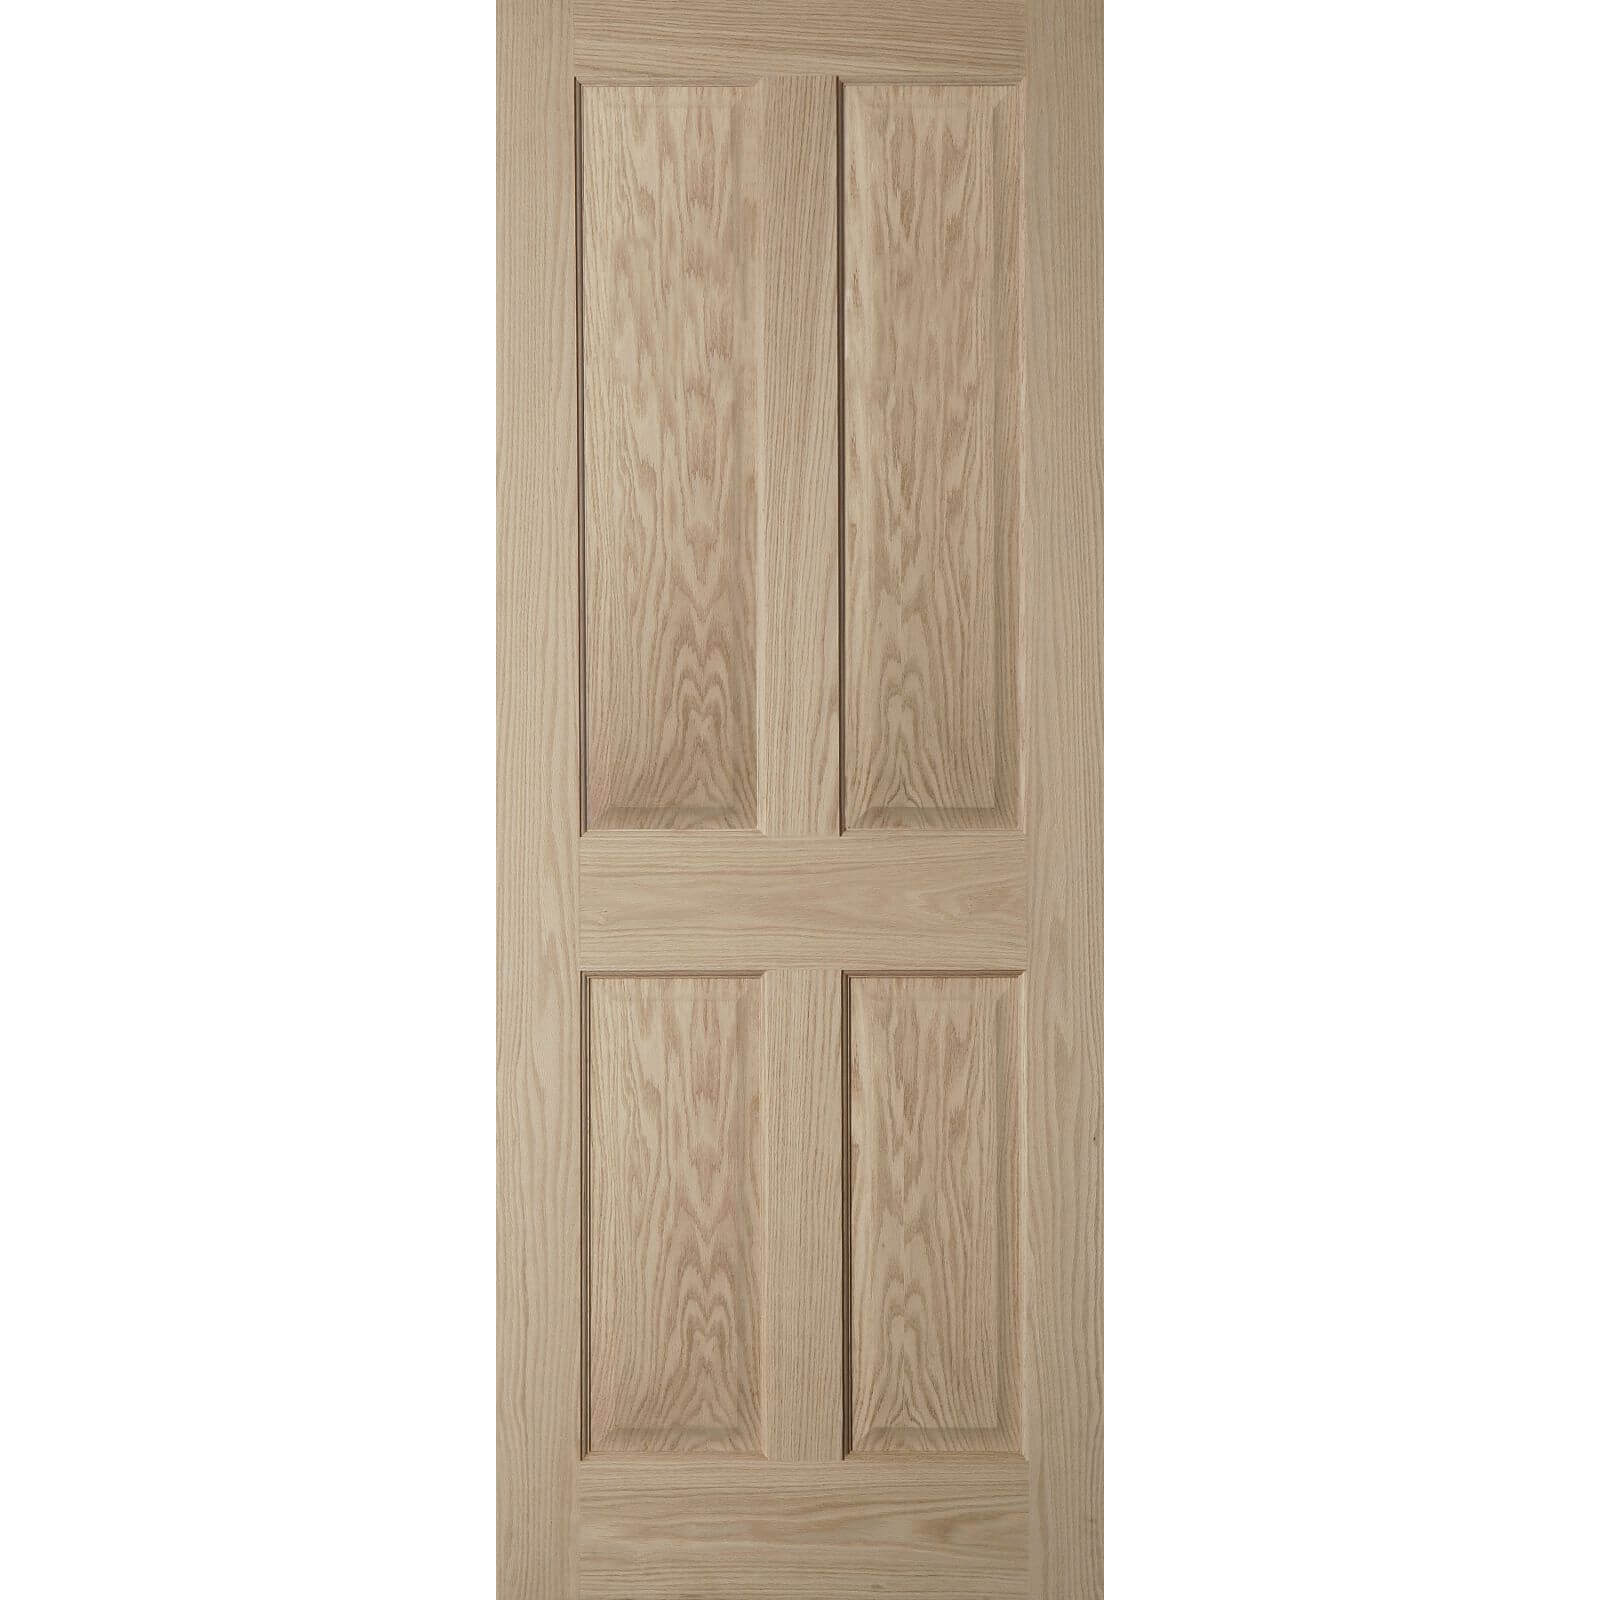 4 Panel Oak Veneer Internal Fire Door - 762mm Wide